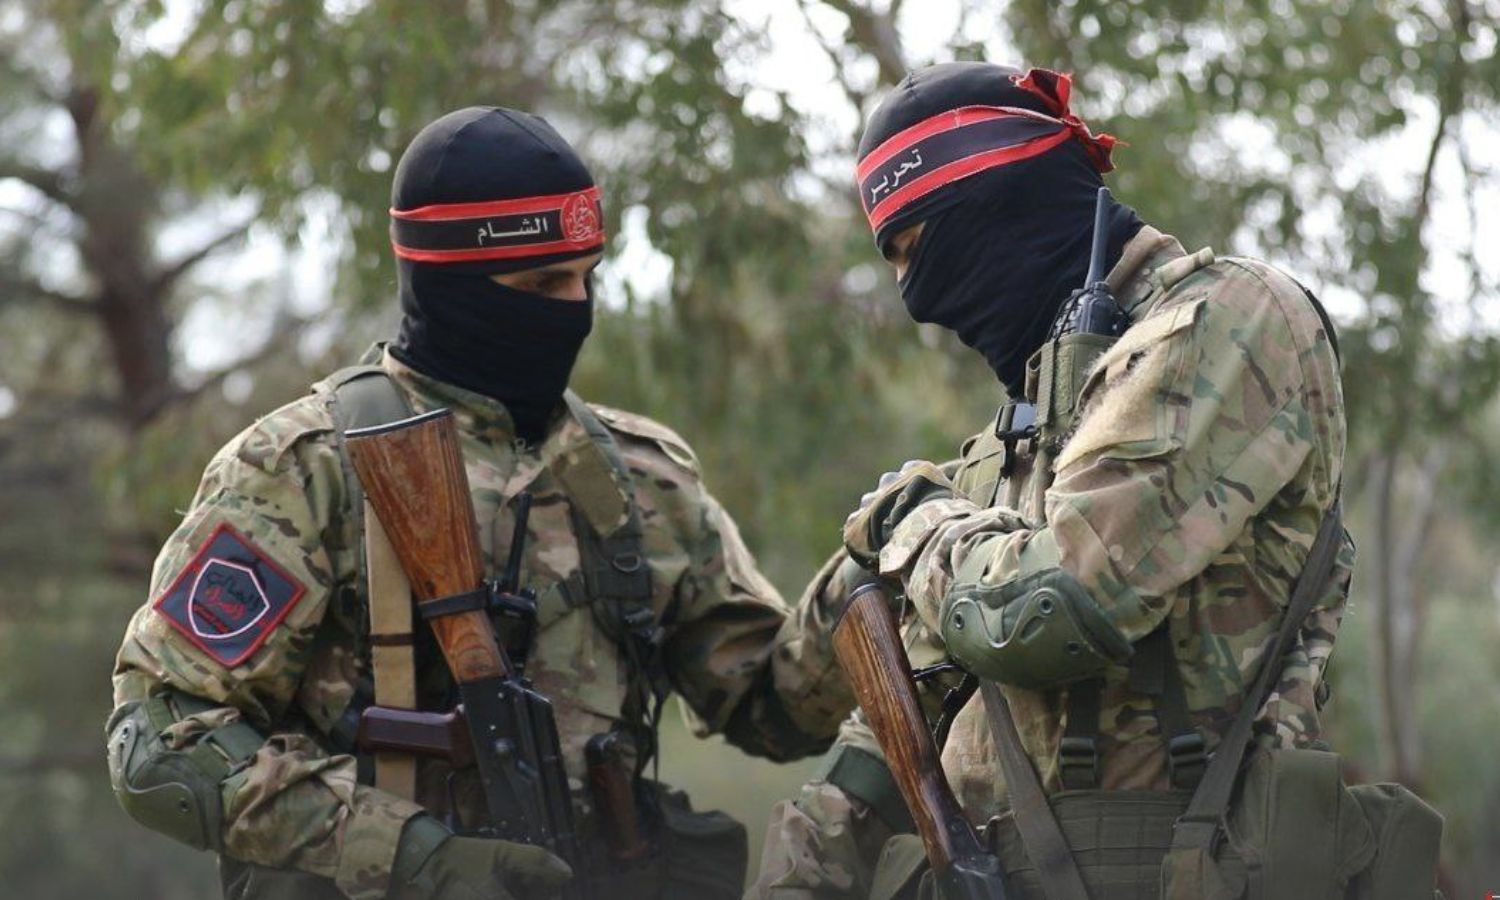 مقاتلان في كتيبة "العصائب الحمراء" التابعة لـ"هيئة تحرير الشام" قبيل عملية "انغماسية" بريف اللاذقية شمال غربي سوريا- 26 من شباط 2023 (أمجاد)